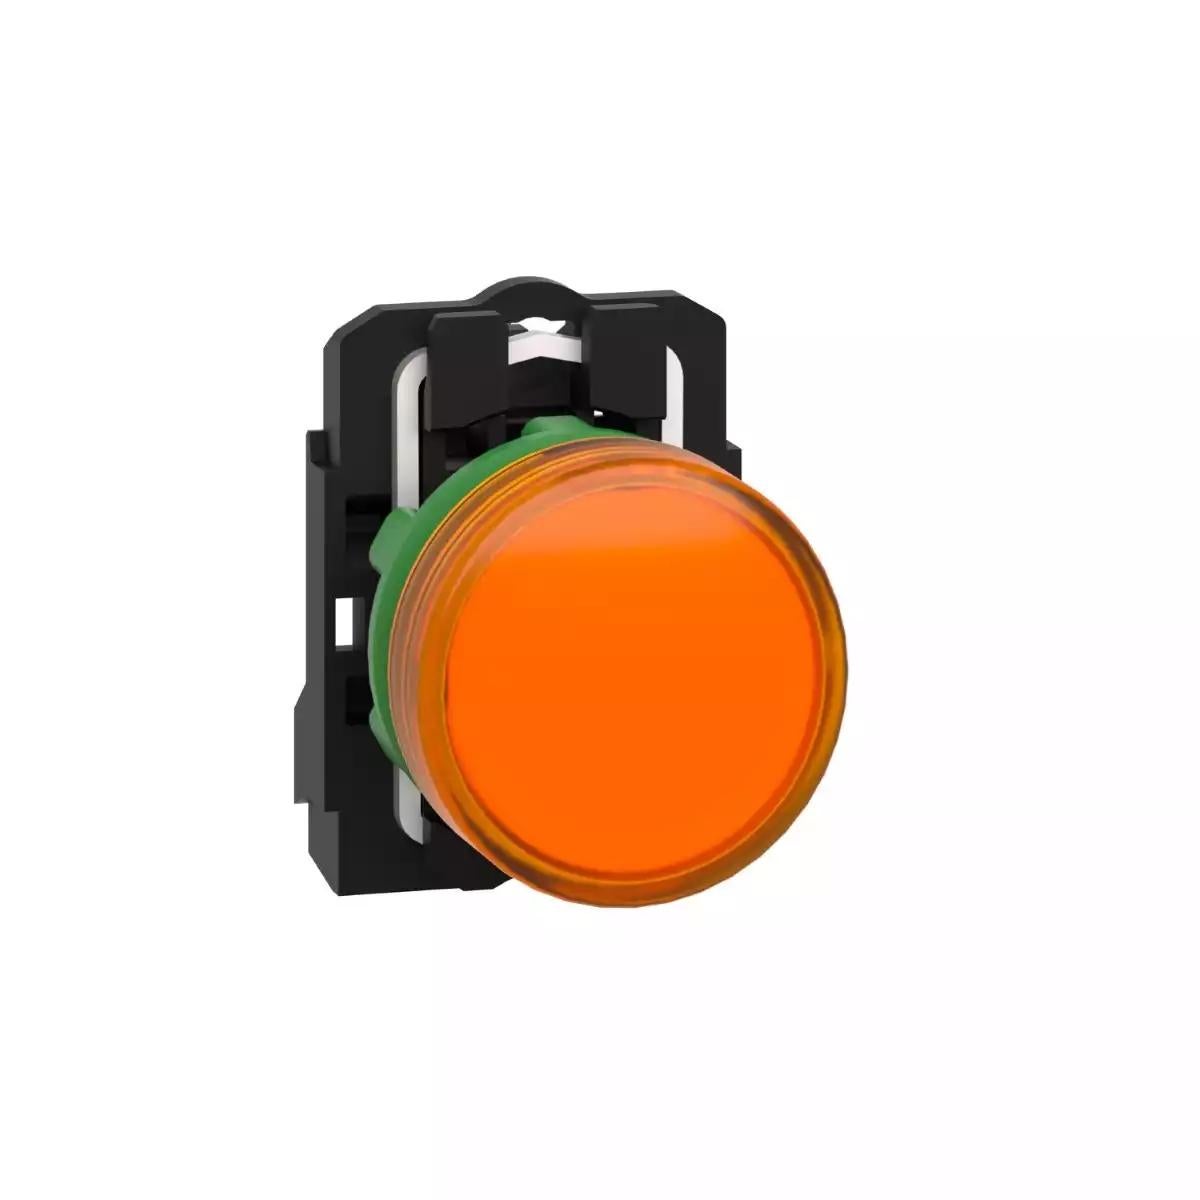 pilot light, Harmony XB5, grey plastic, orange, 22mm, universal LED, plain lens, 110…120V AC